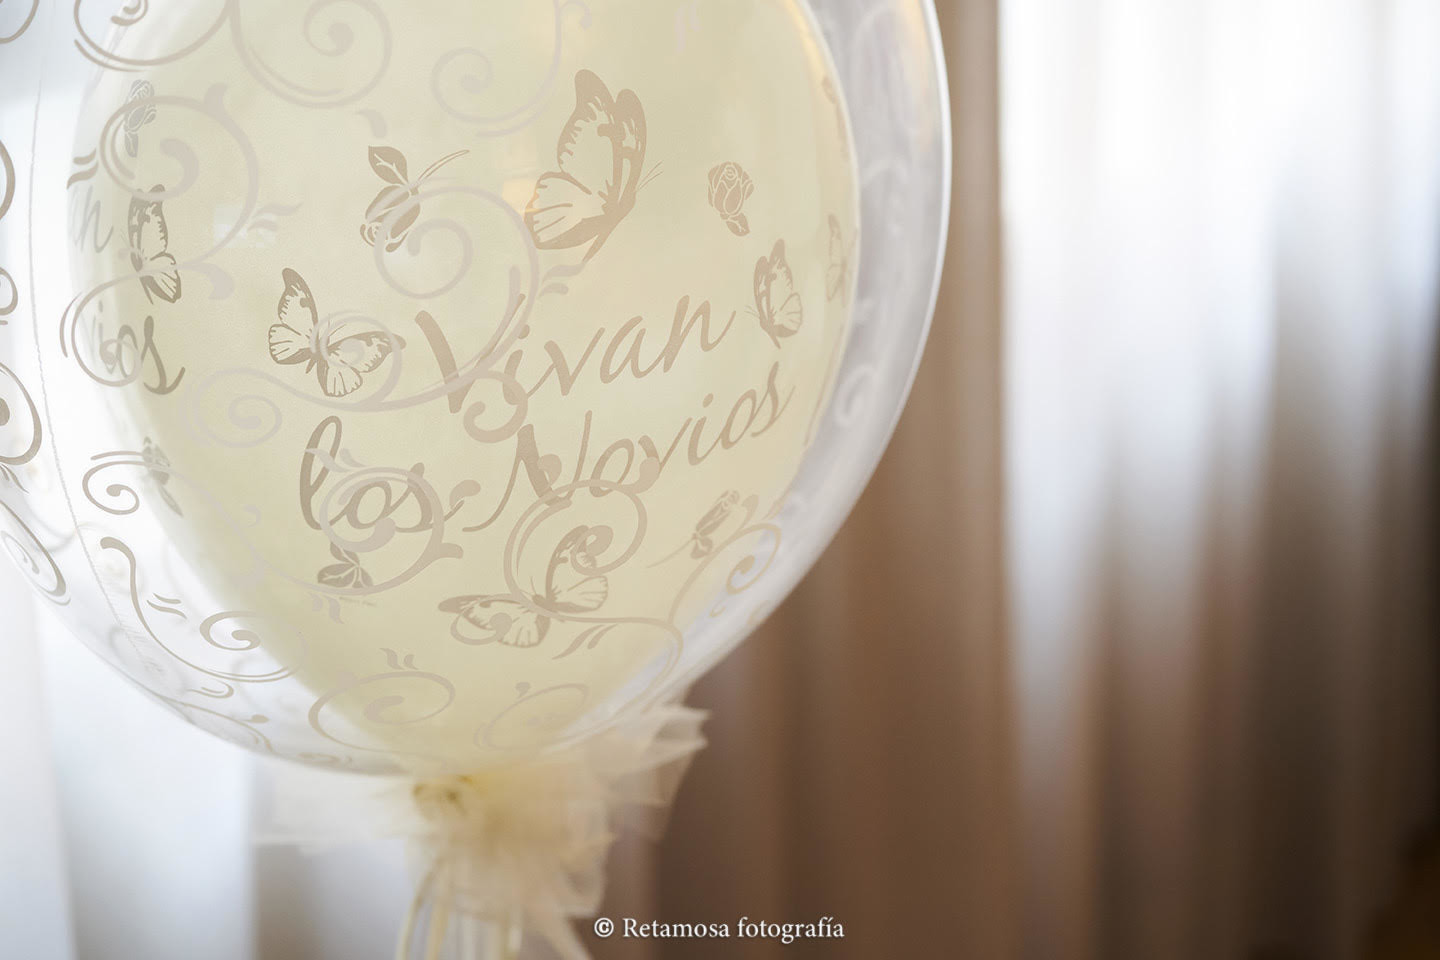 Decoración con globos en las bodas